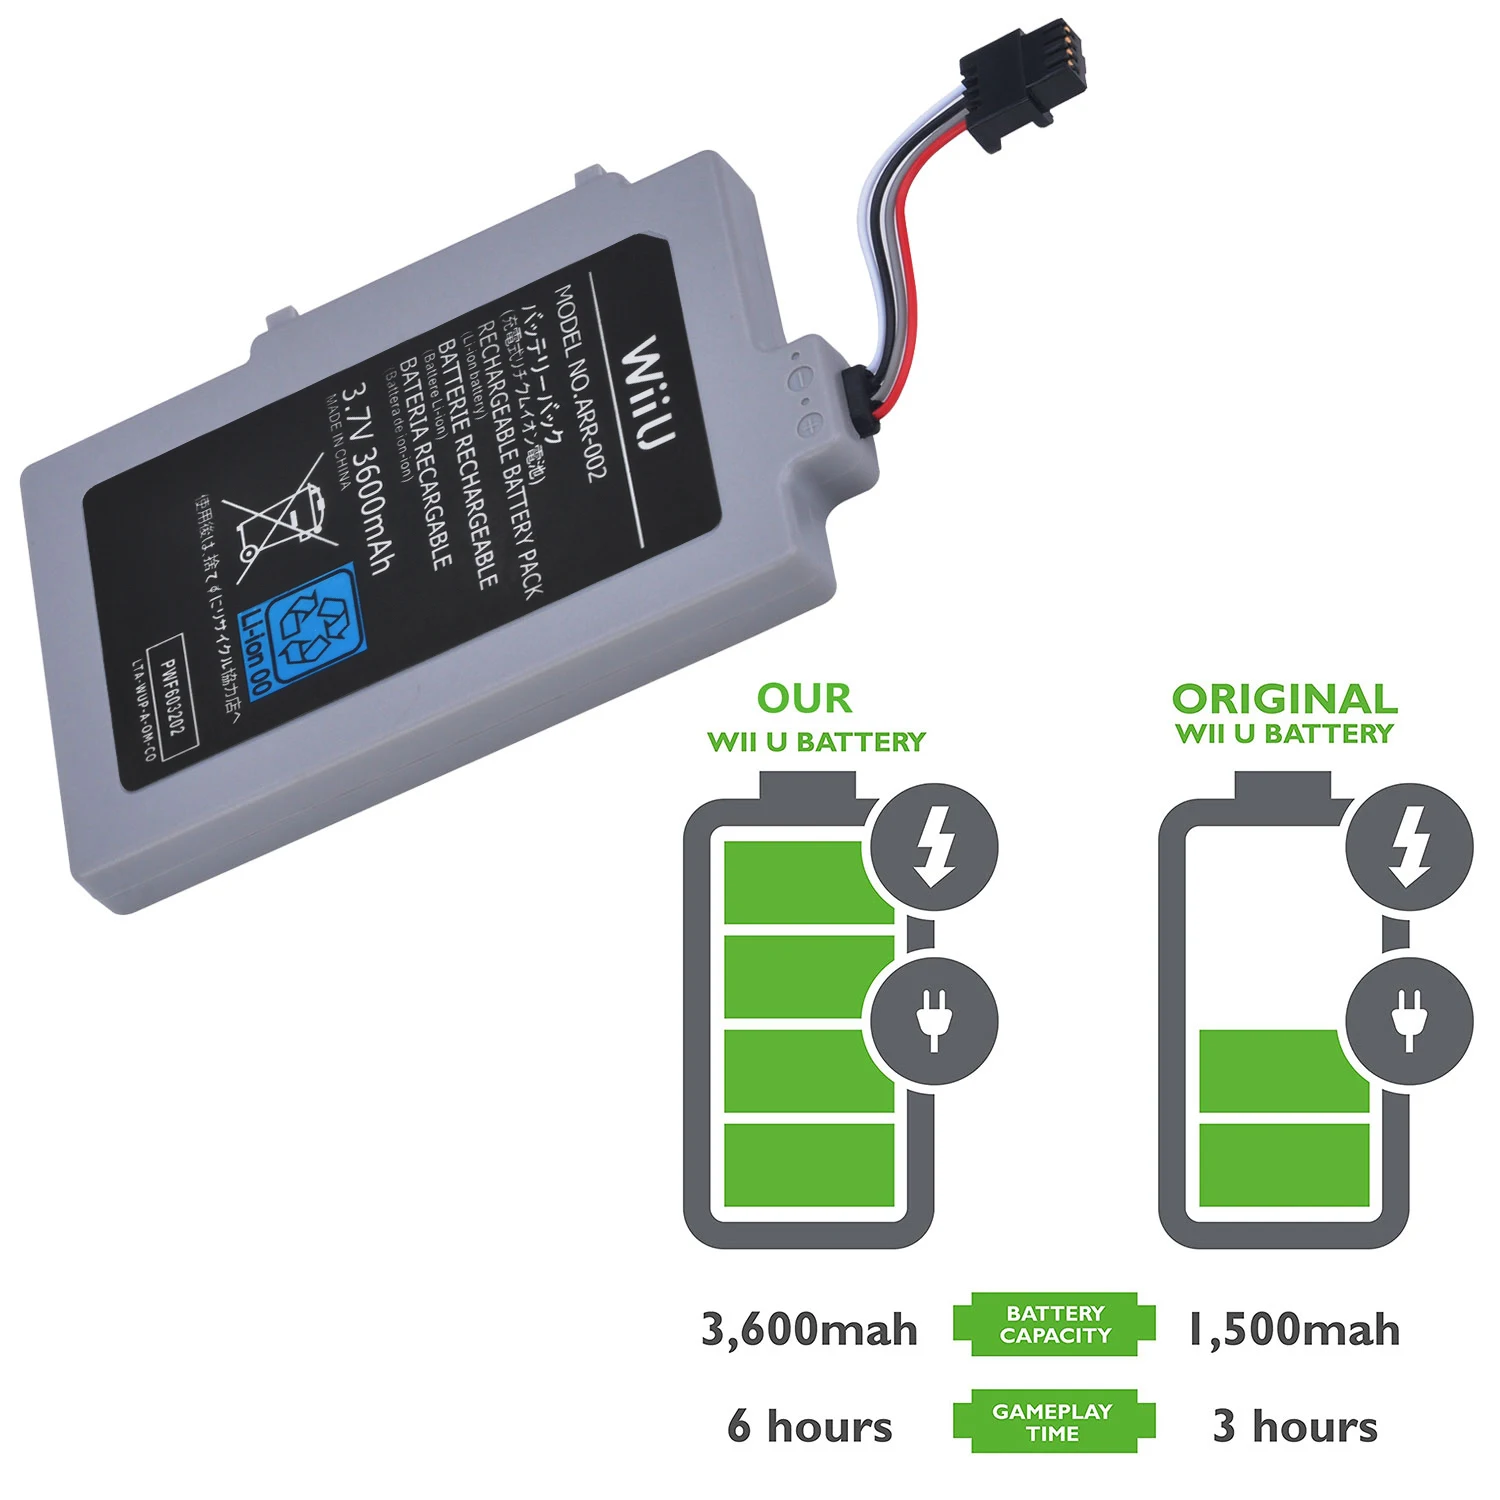 ARR-002 3600mah lítio li-ion bateria para nintendo wii u wii-u wiiu gamepad controlador joystick bateria com chave de fenda